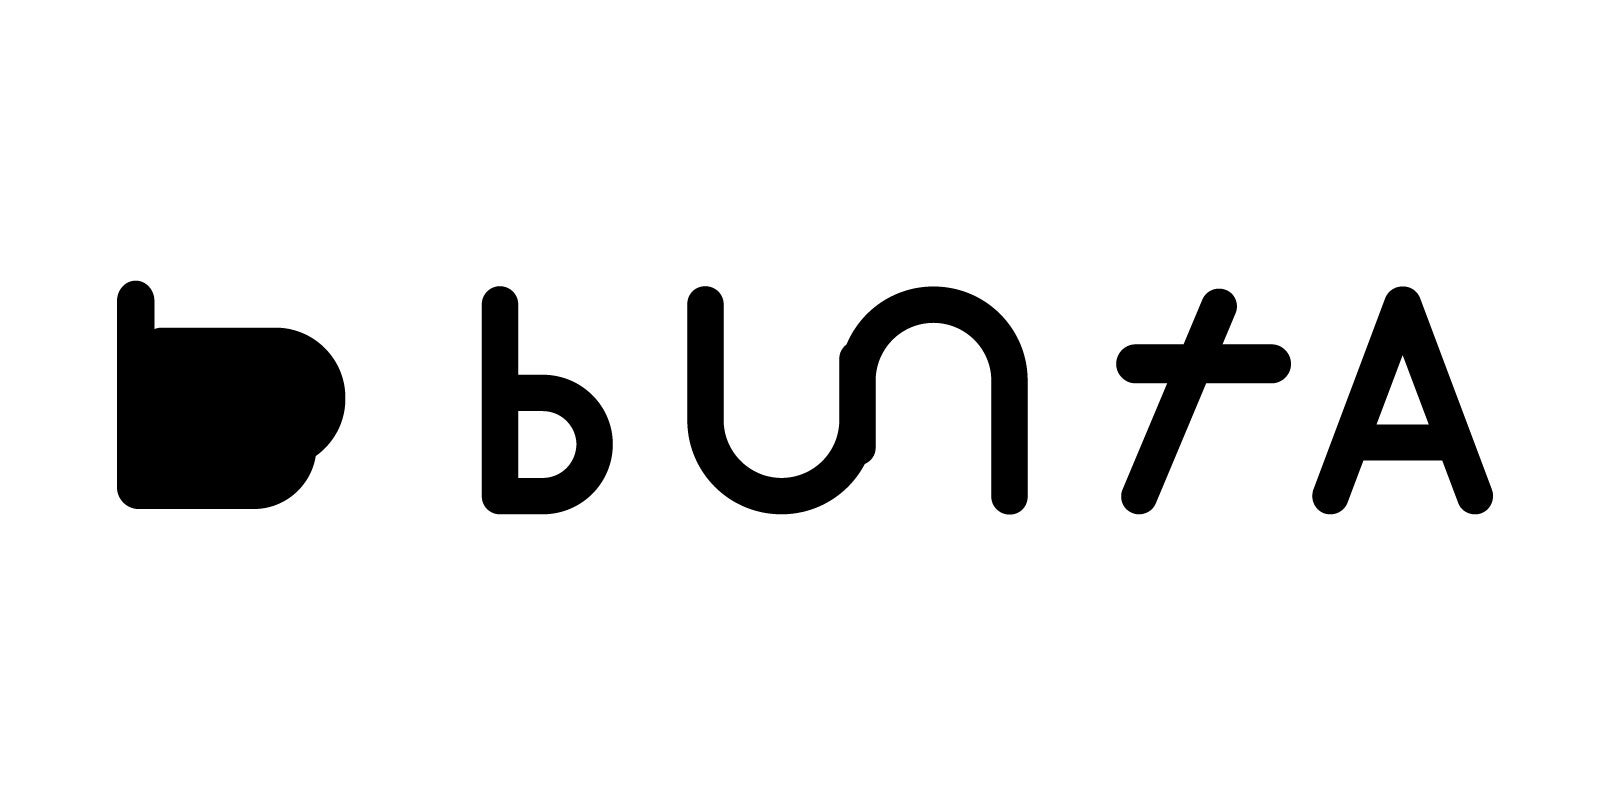 神戸から世界を目指すラバーブランド『buntaro®』 ブランド名およびブランドロゴ一新のお知らせ